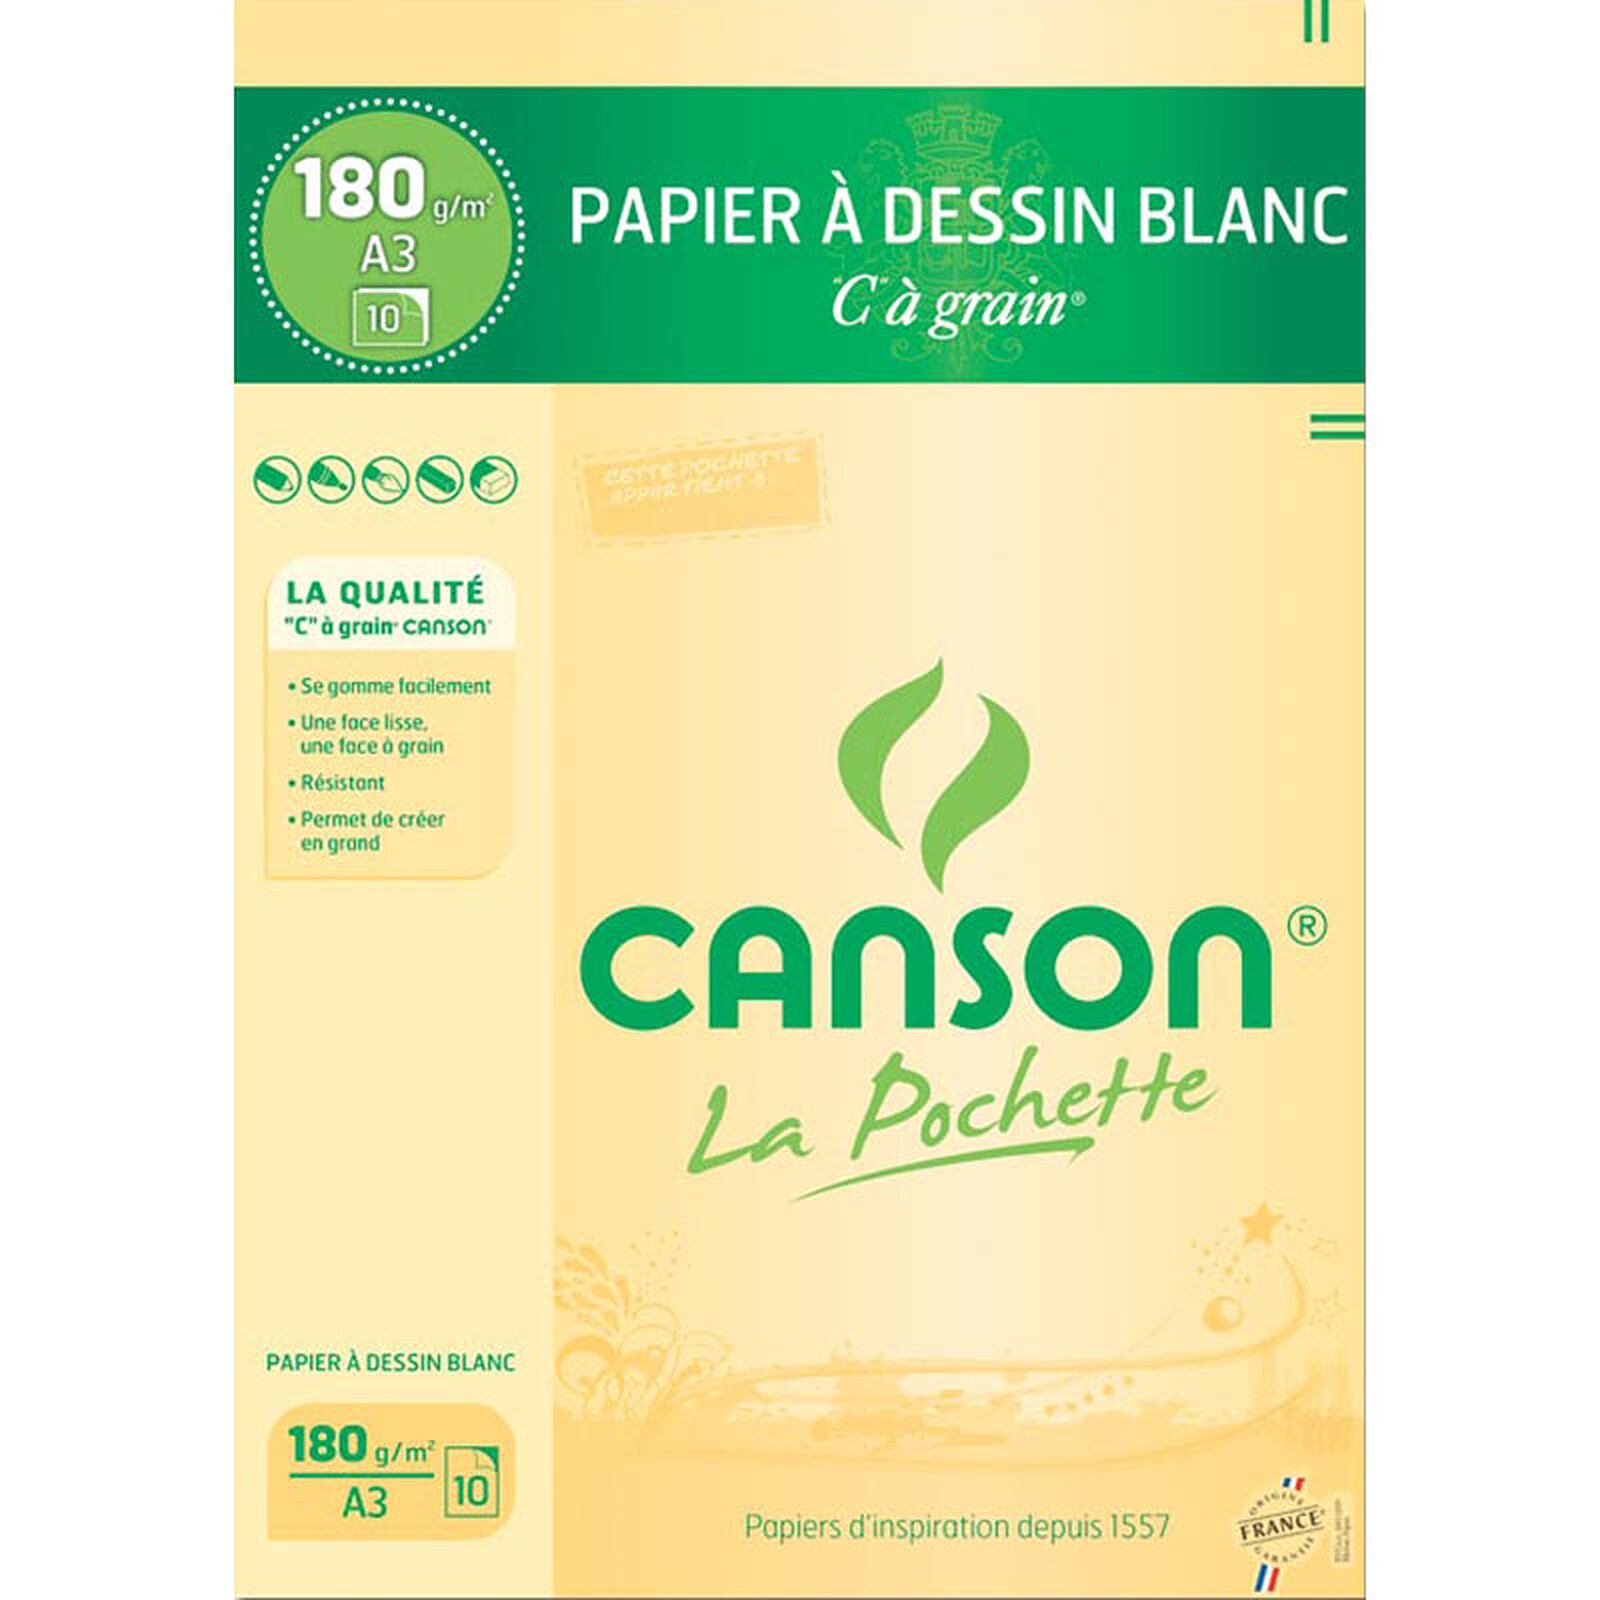 Canson Pochette Papier dessin Blanc C à grain (A3) - Papier spécifique -  LDLC